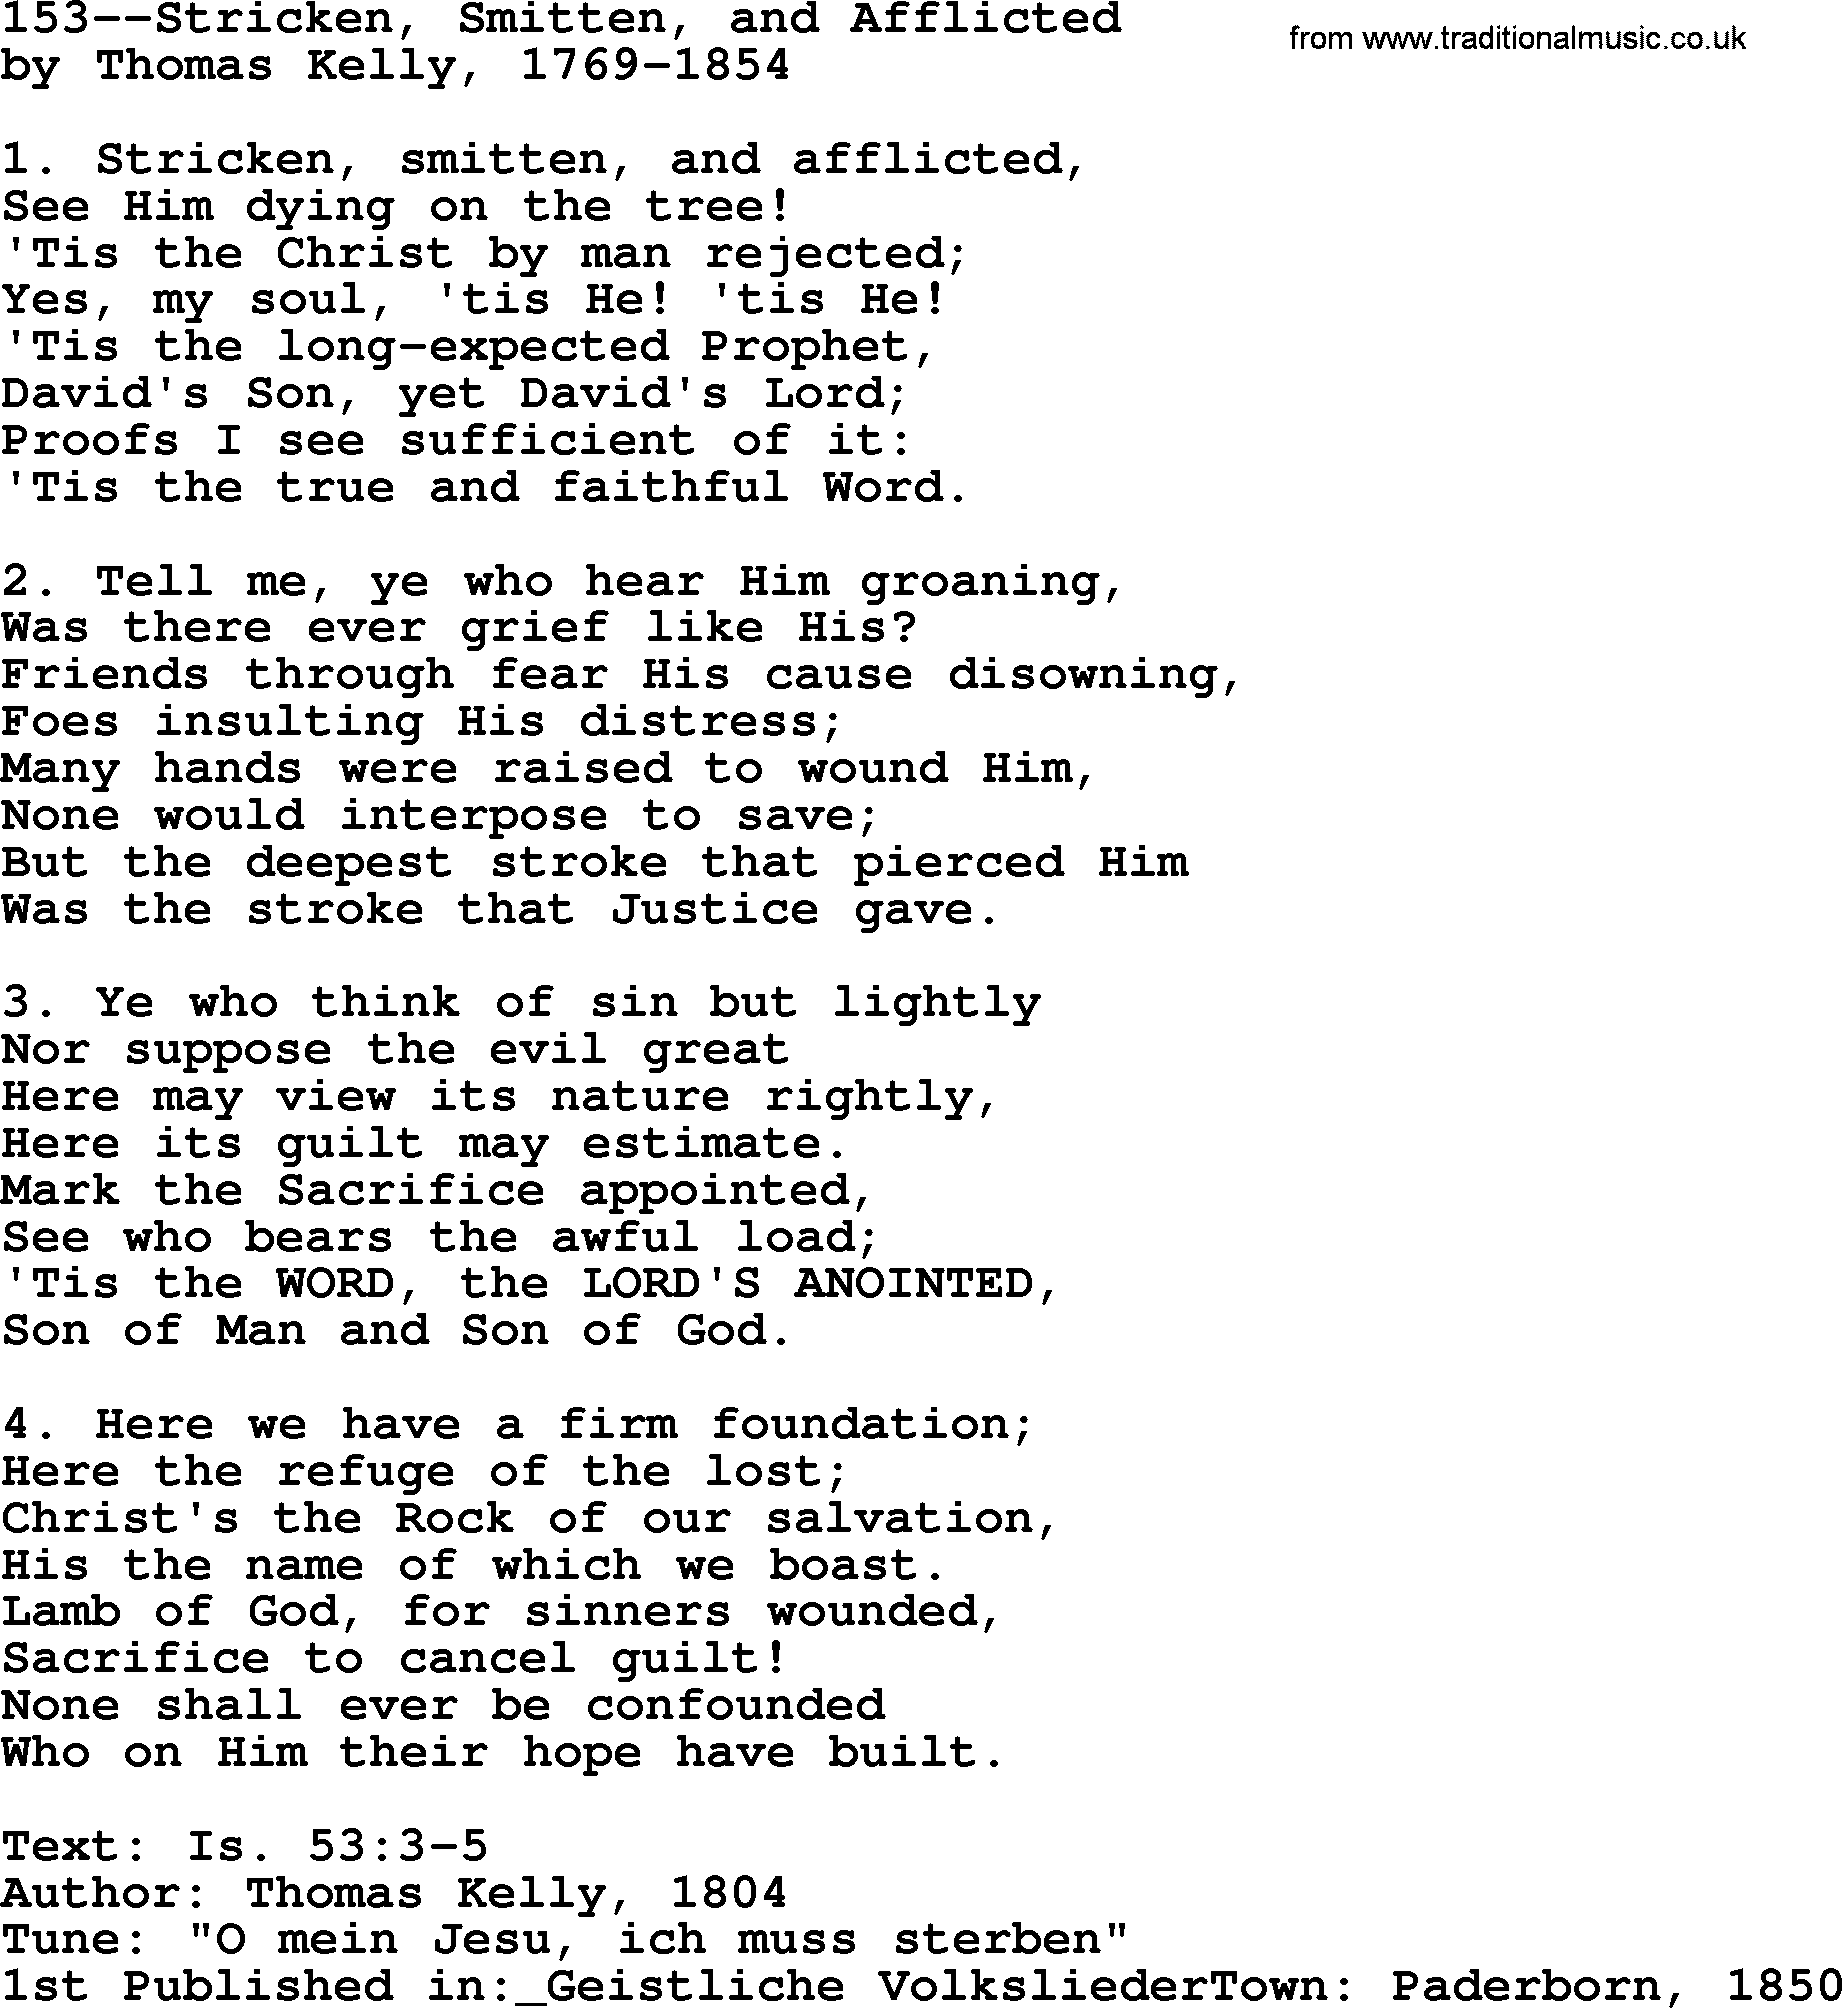 Lutheran Hymn: 153--Stricken, Smitten, and Afflicted.txt lyrics with PDF